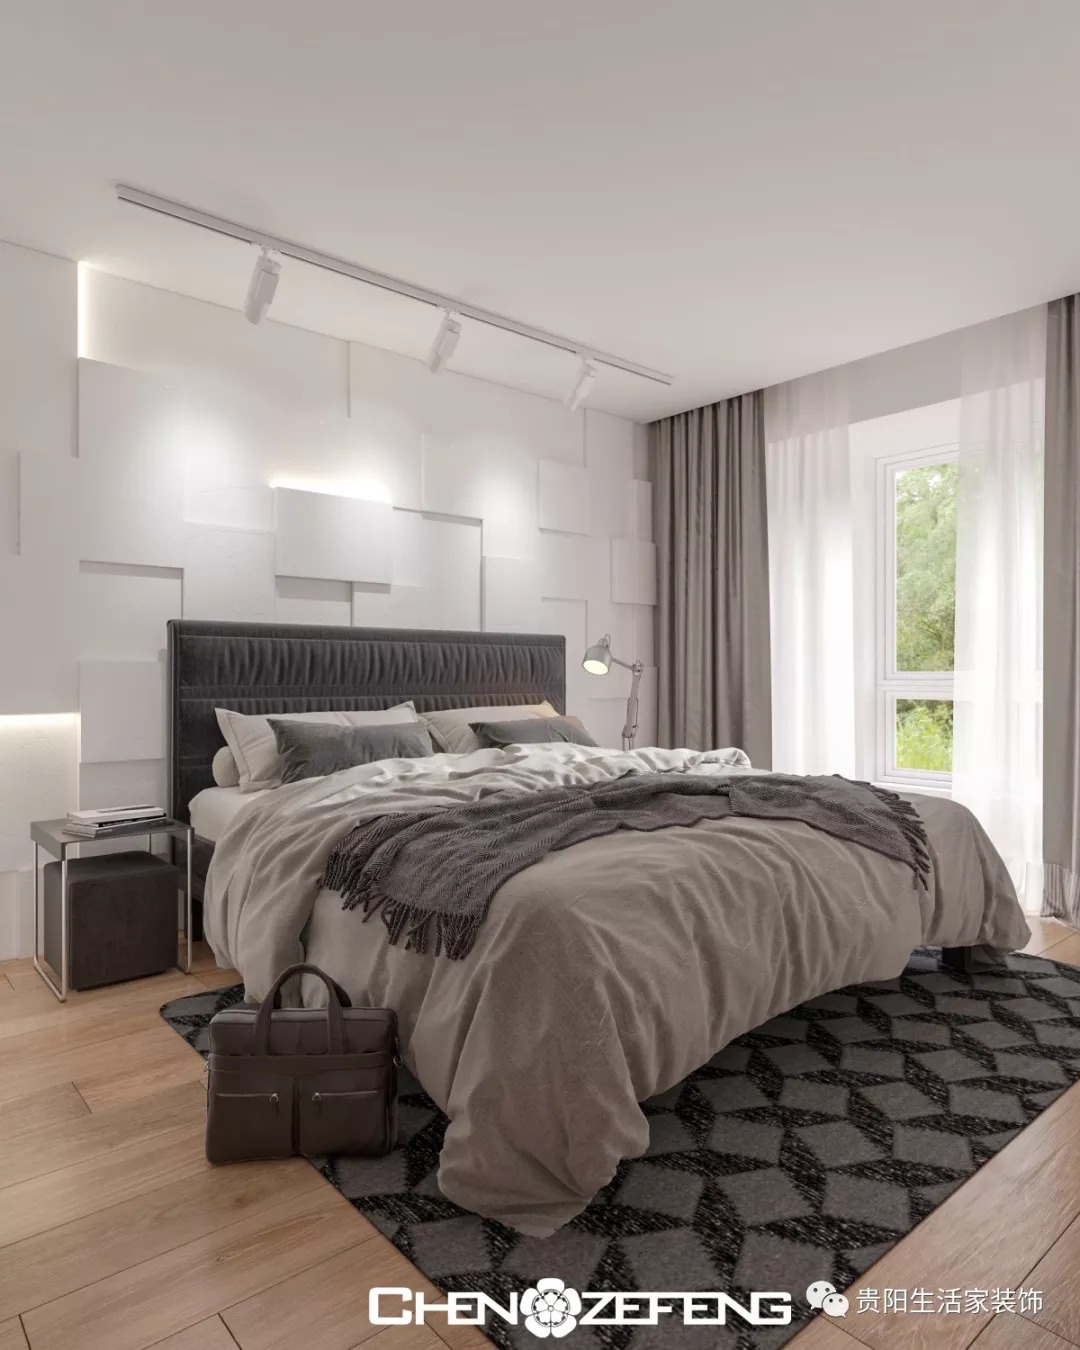 床头凹凸方块形状设计是卧室最大的设计亮点